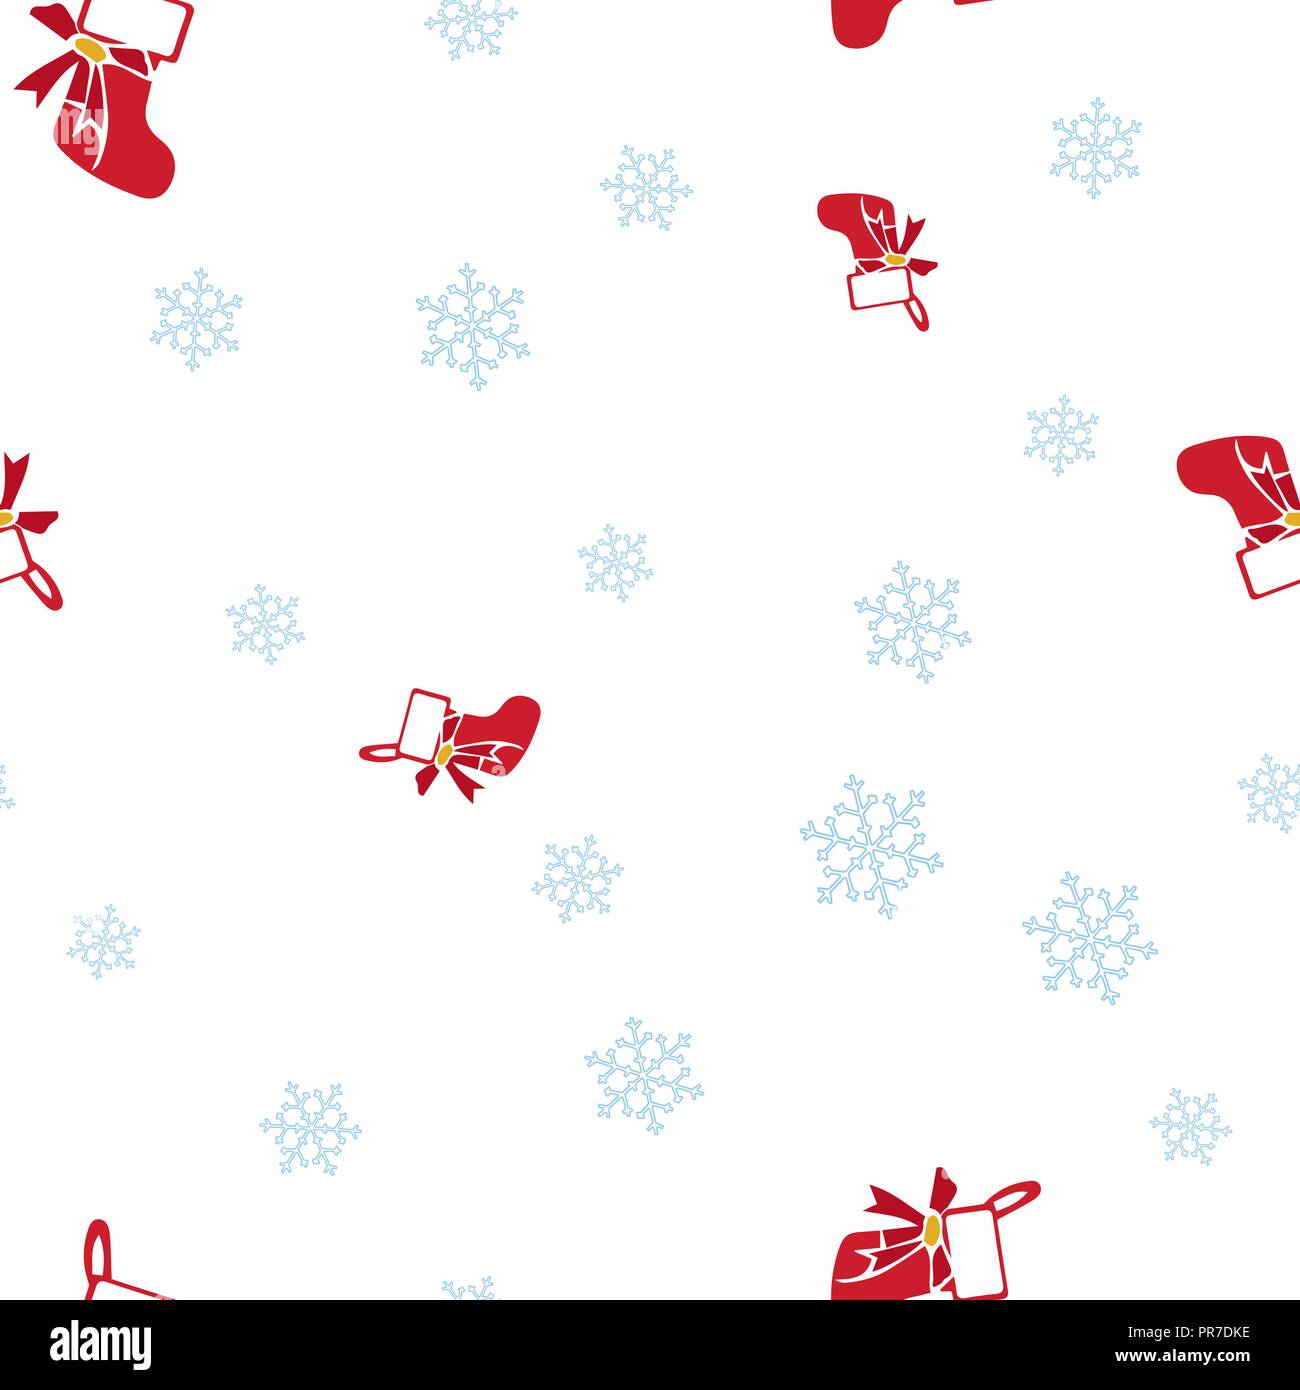 Red christmas Socke und Schneeflocke nahtlose Muster. Auf einem weißen Hintergrund. Vector Illustration. Stock Vektor